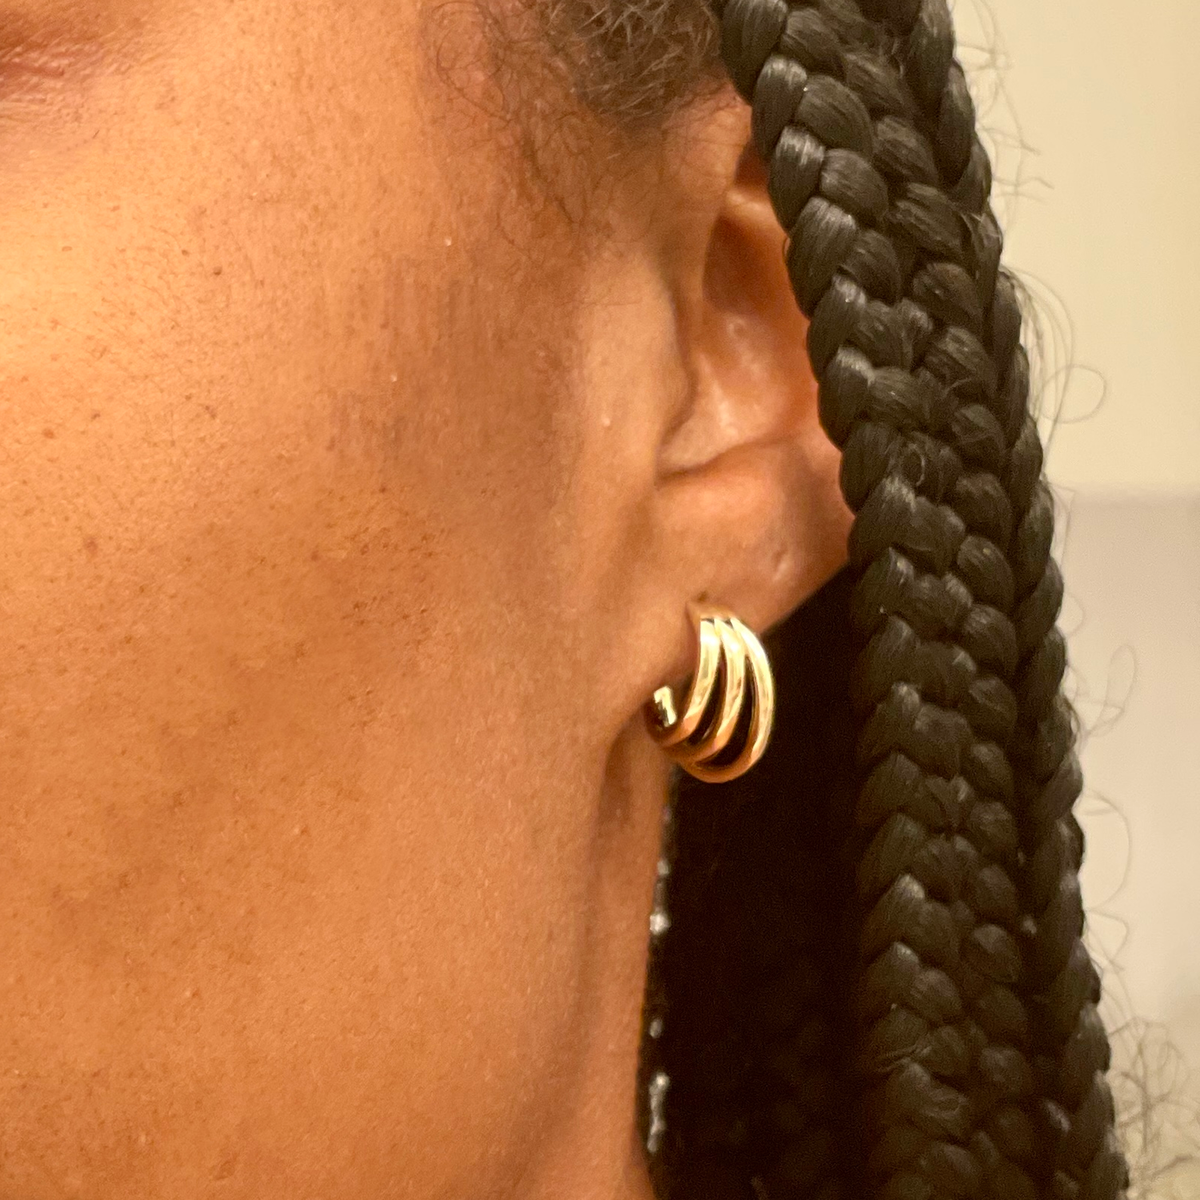 Mini Open Hoop Earrings